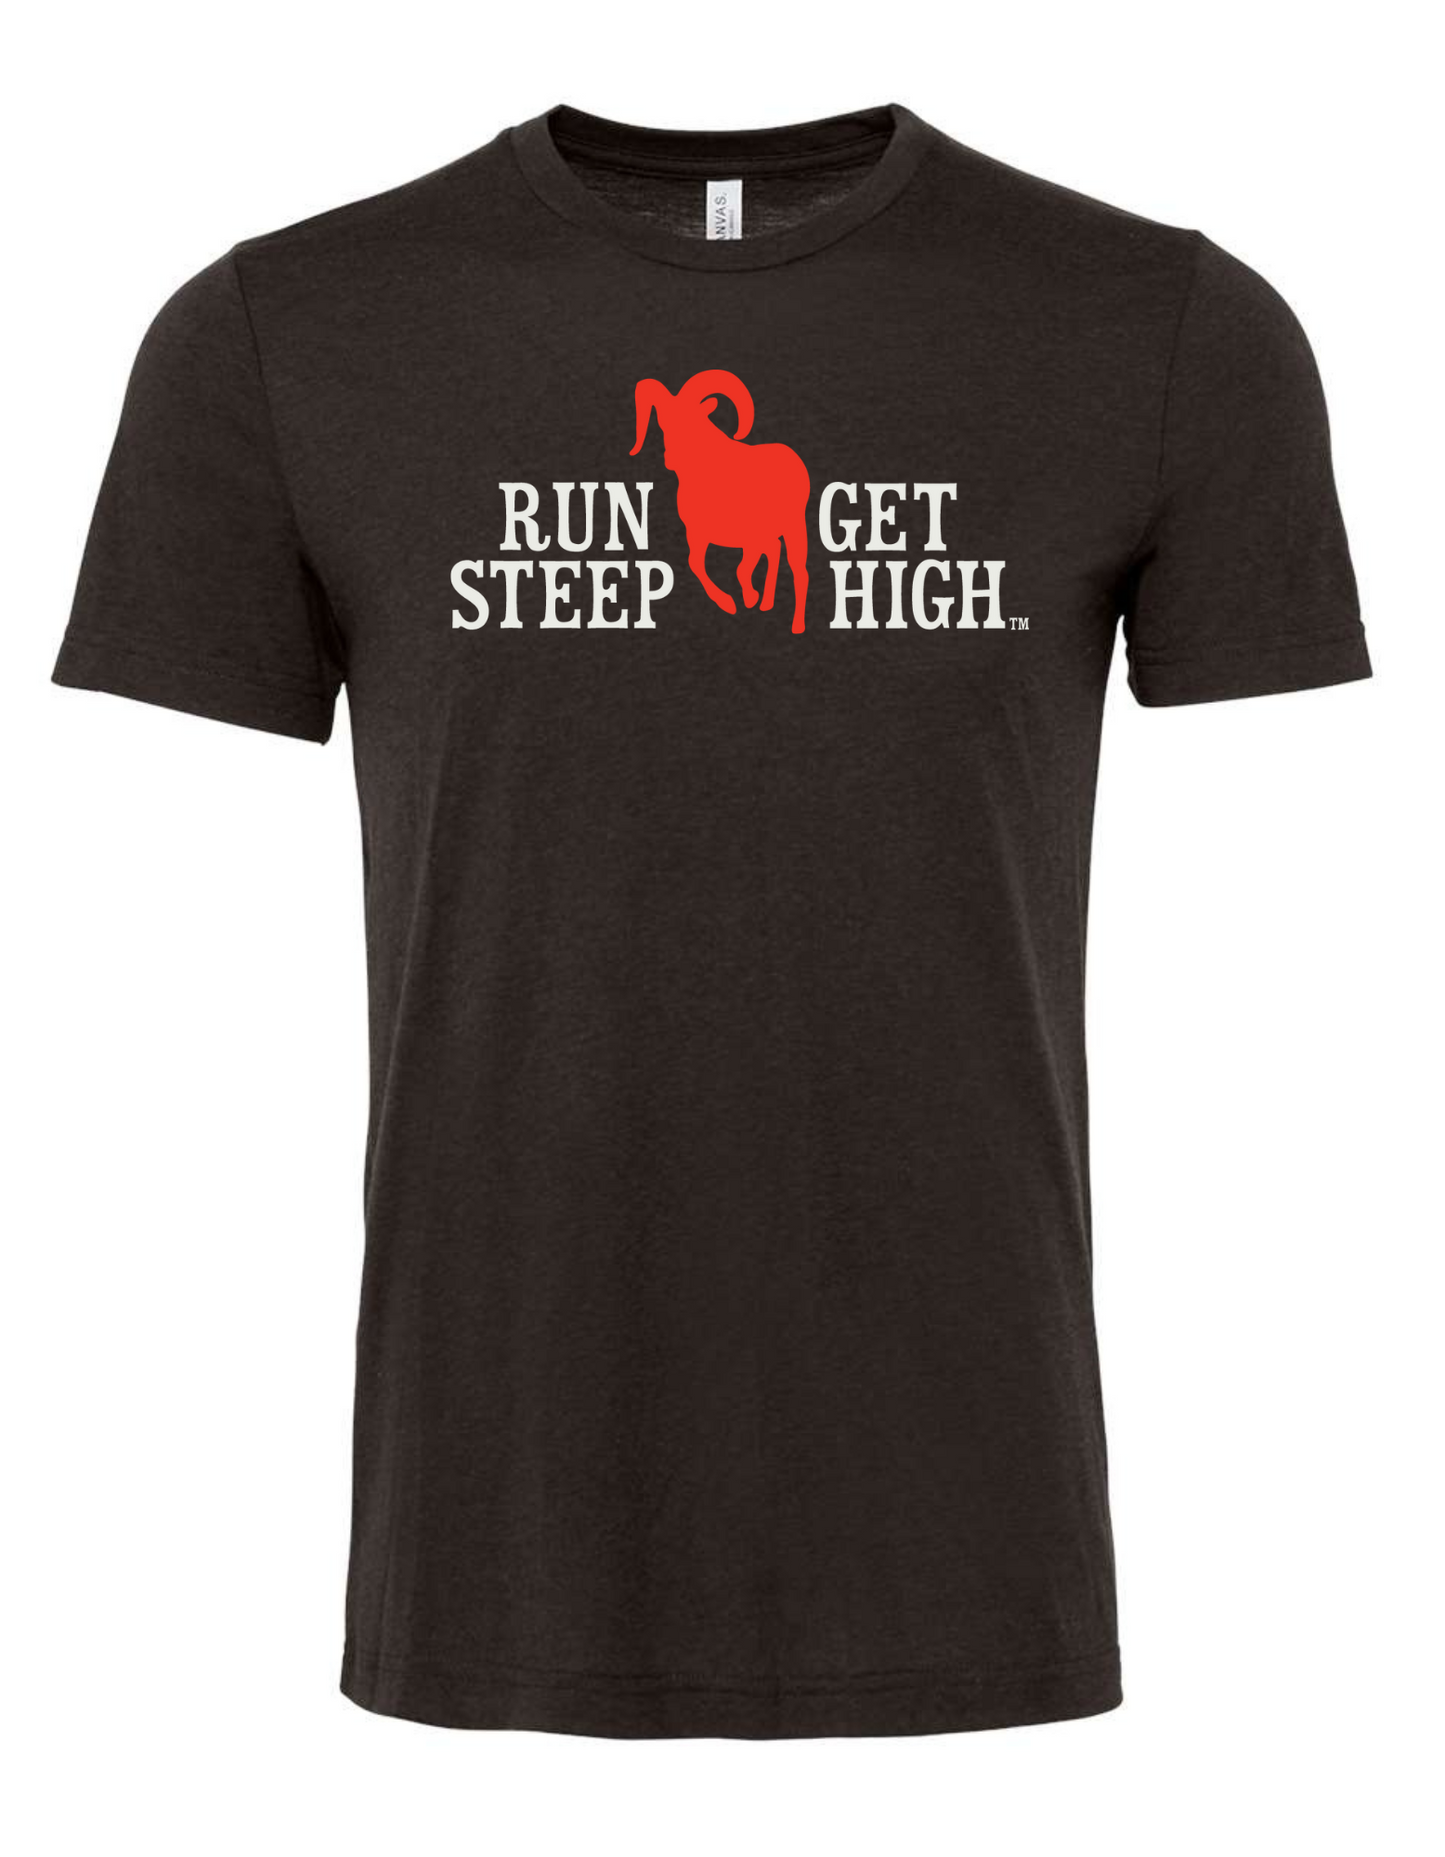 Run Steep Get High SS T-Shirt